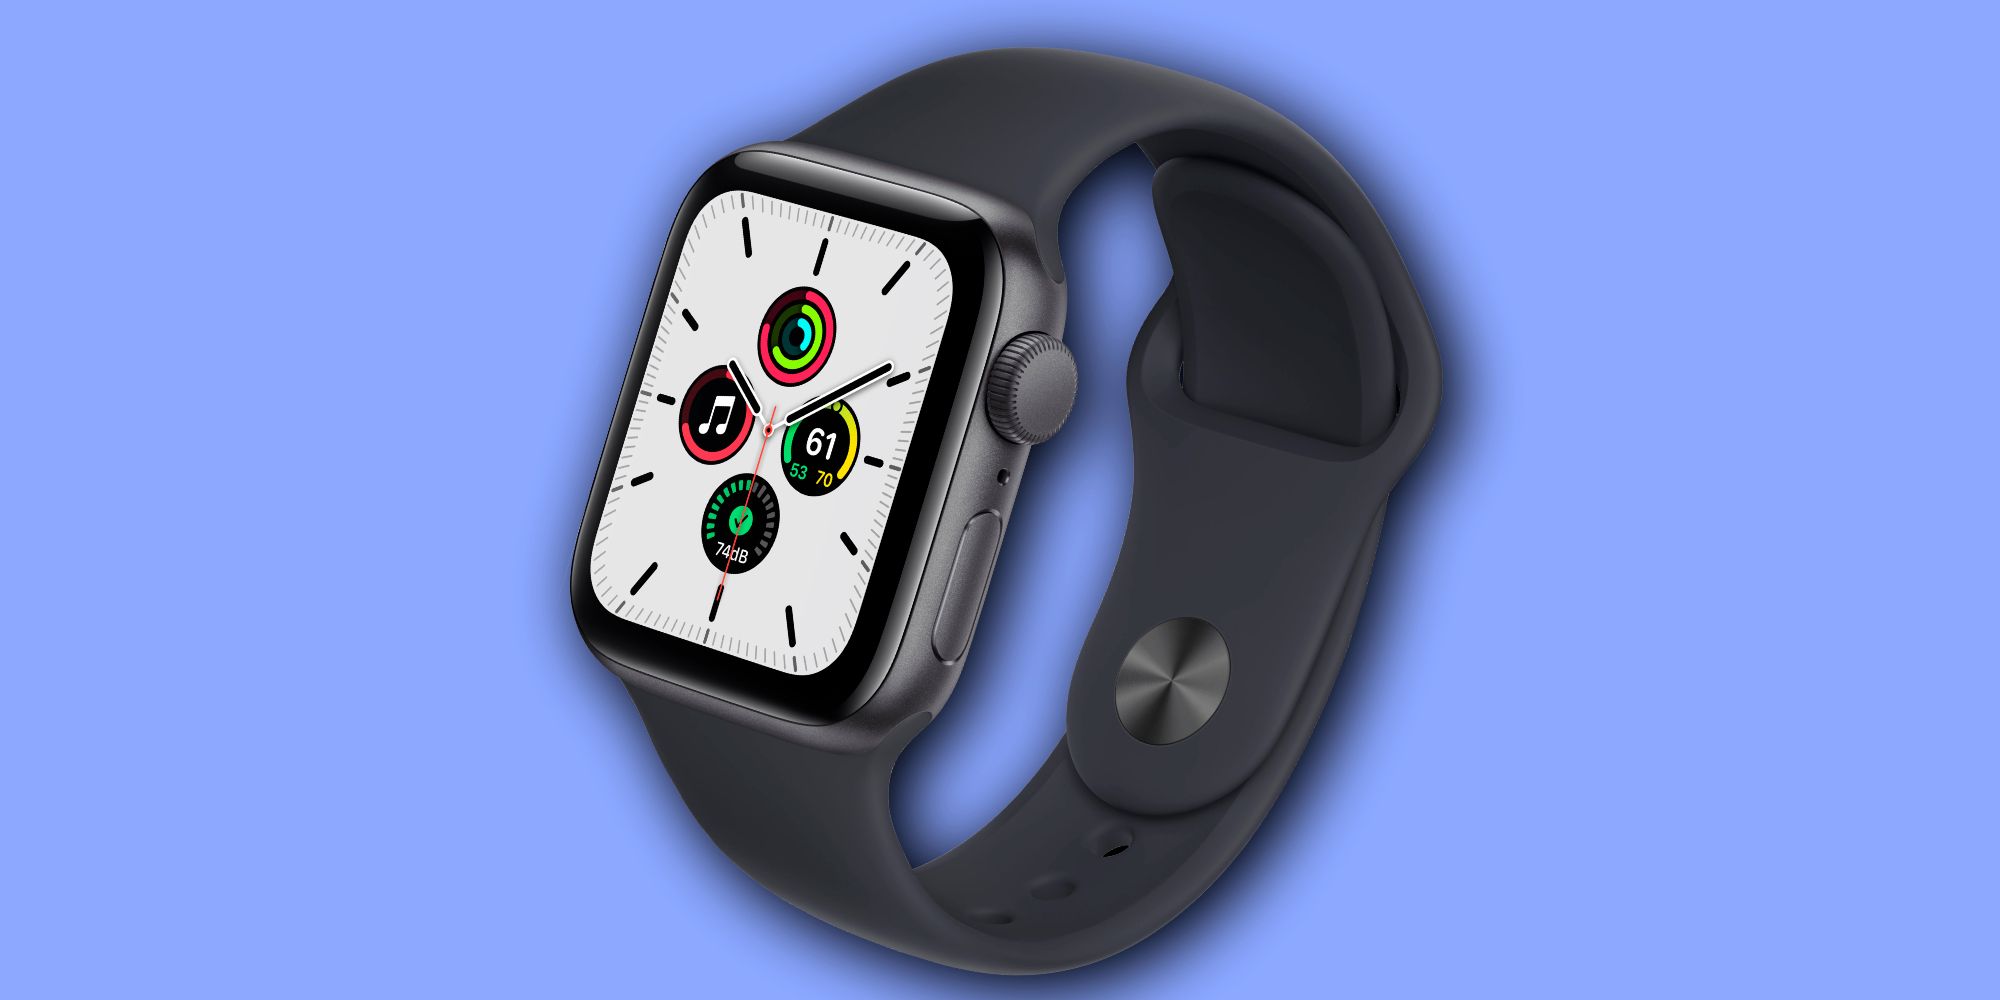 Se rumorea que Apple Watch SE 2 tendrá pantalla siempre activa y seguimiento de ECG